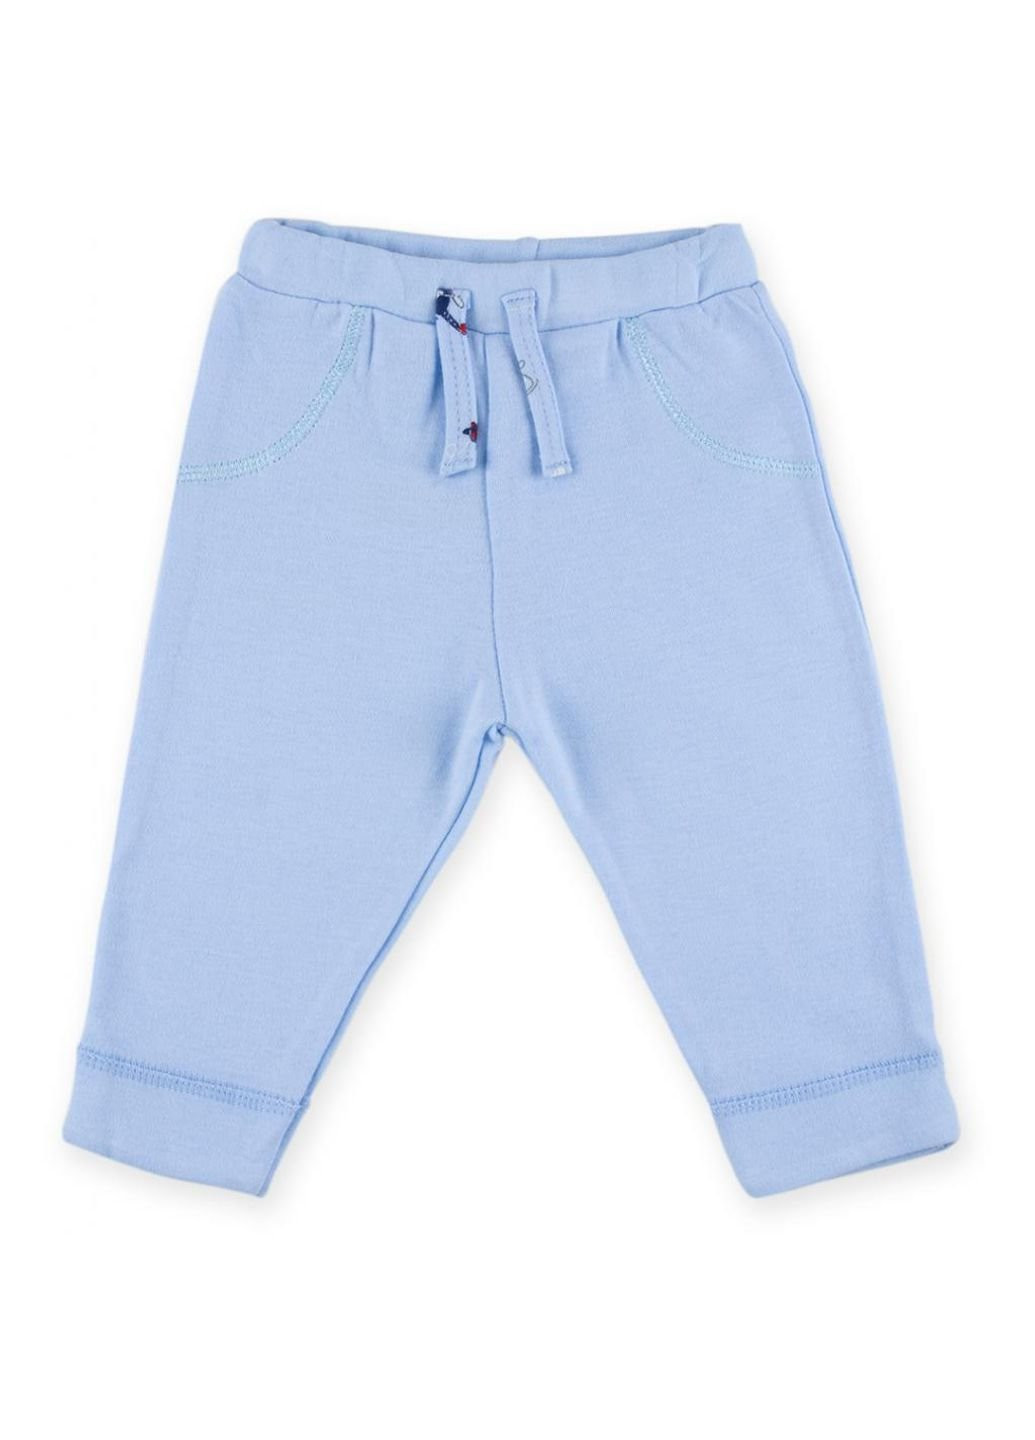 Блакитний демісезонний набір дитячого одягу для хлопчиків: чоловічок, штанці, кофточка та шапочка (f7763.b.0-3) Luvena Fortuna